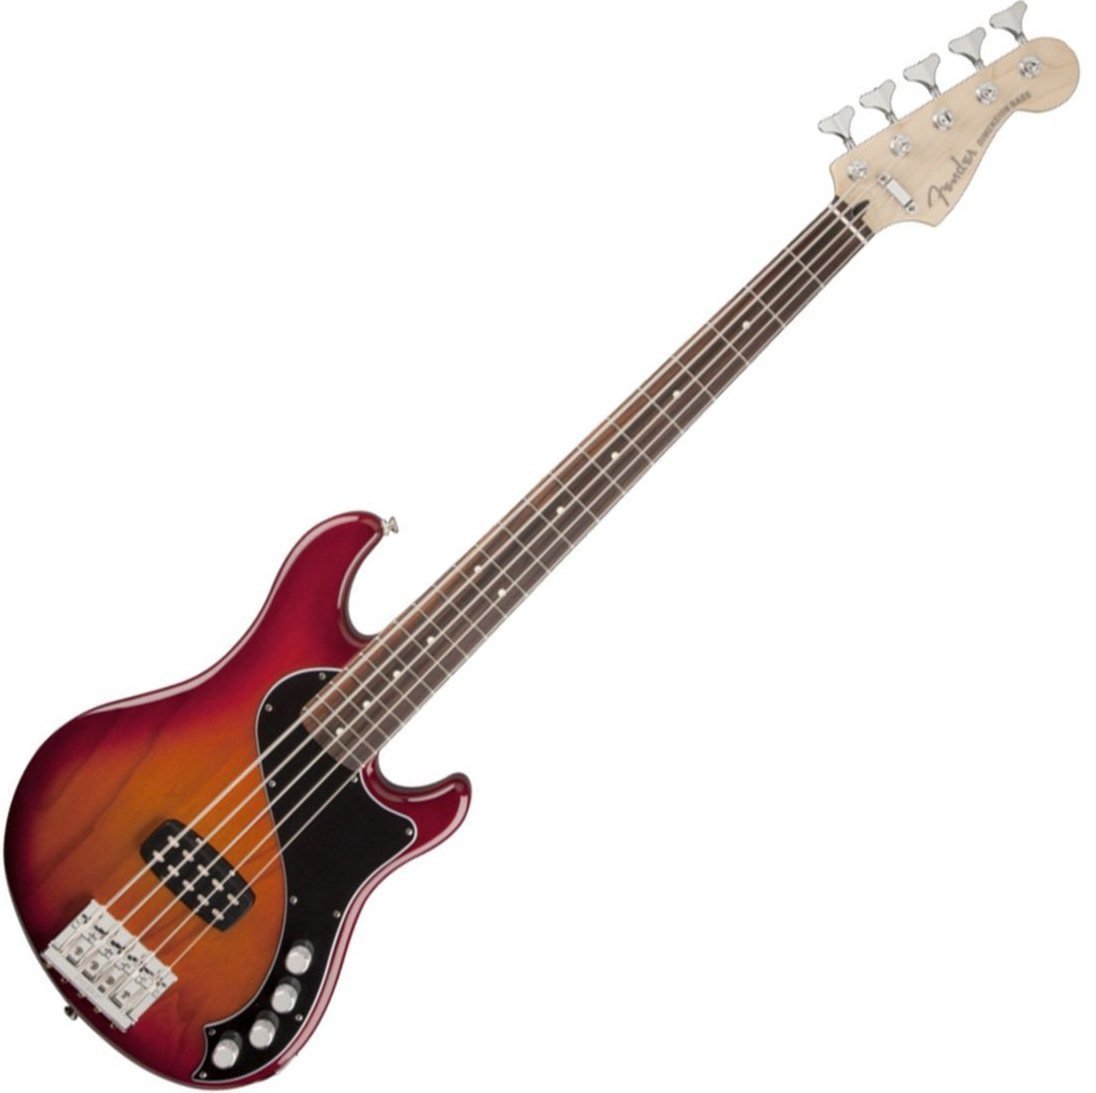 5-string Bassguitar Fender Deluxe Dimension Bass V 5 string Aged Cherry Burst